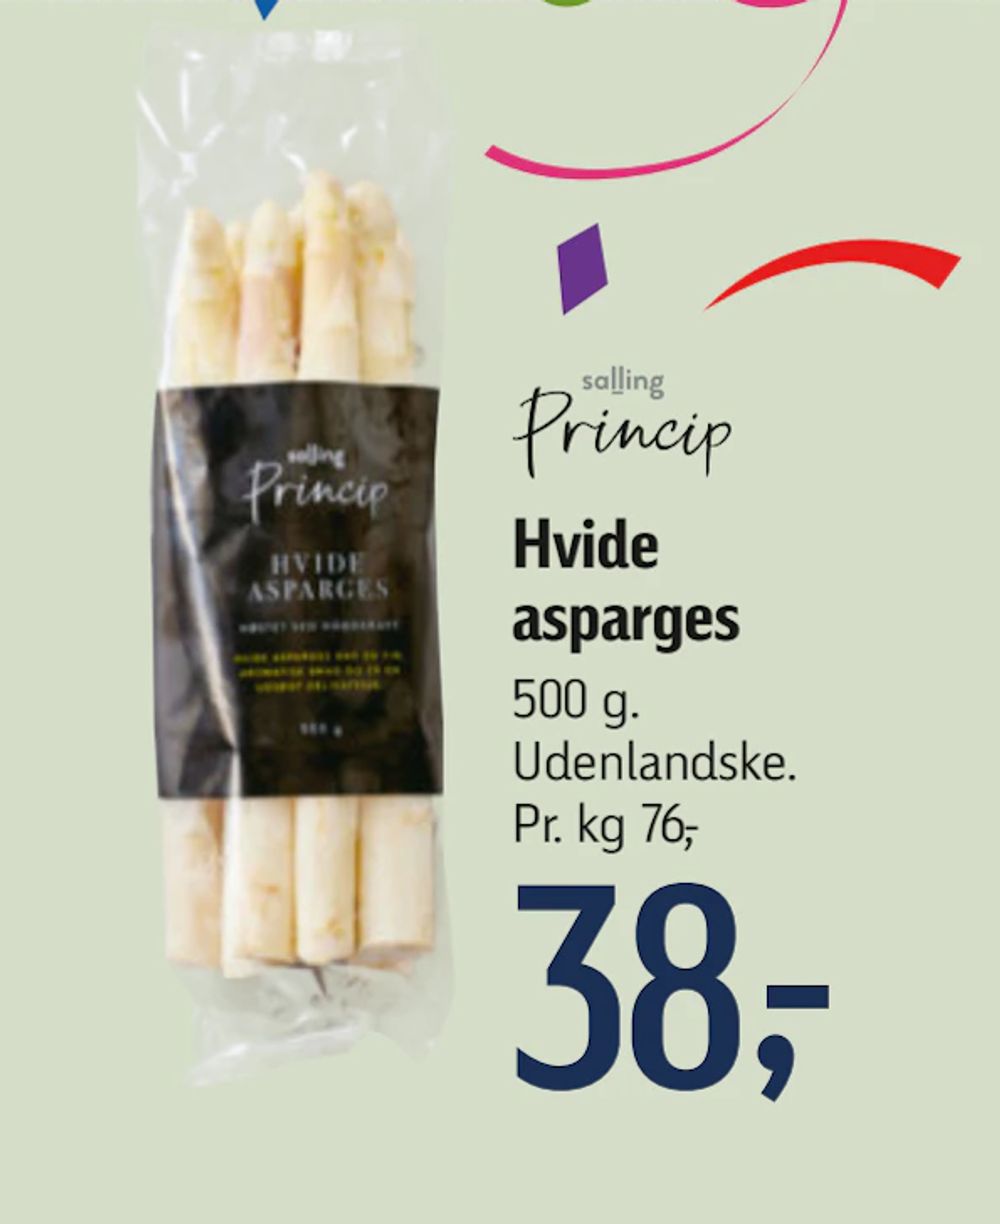 Tilbud på Hvide asparges fra føtex til 38 kr.